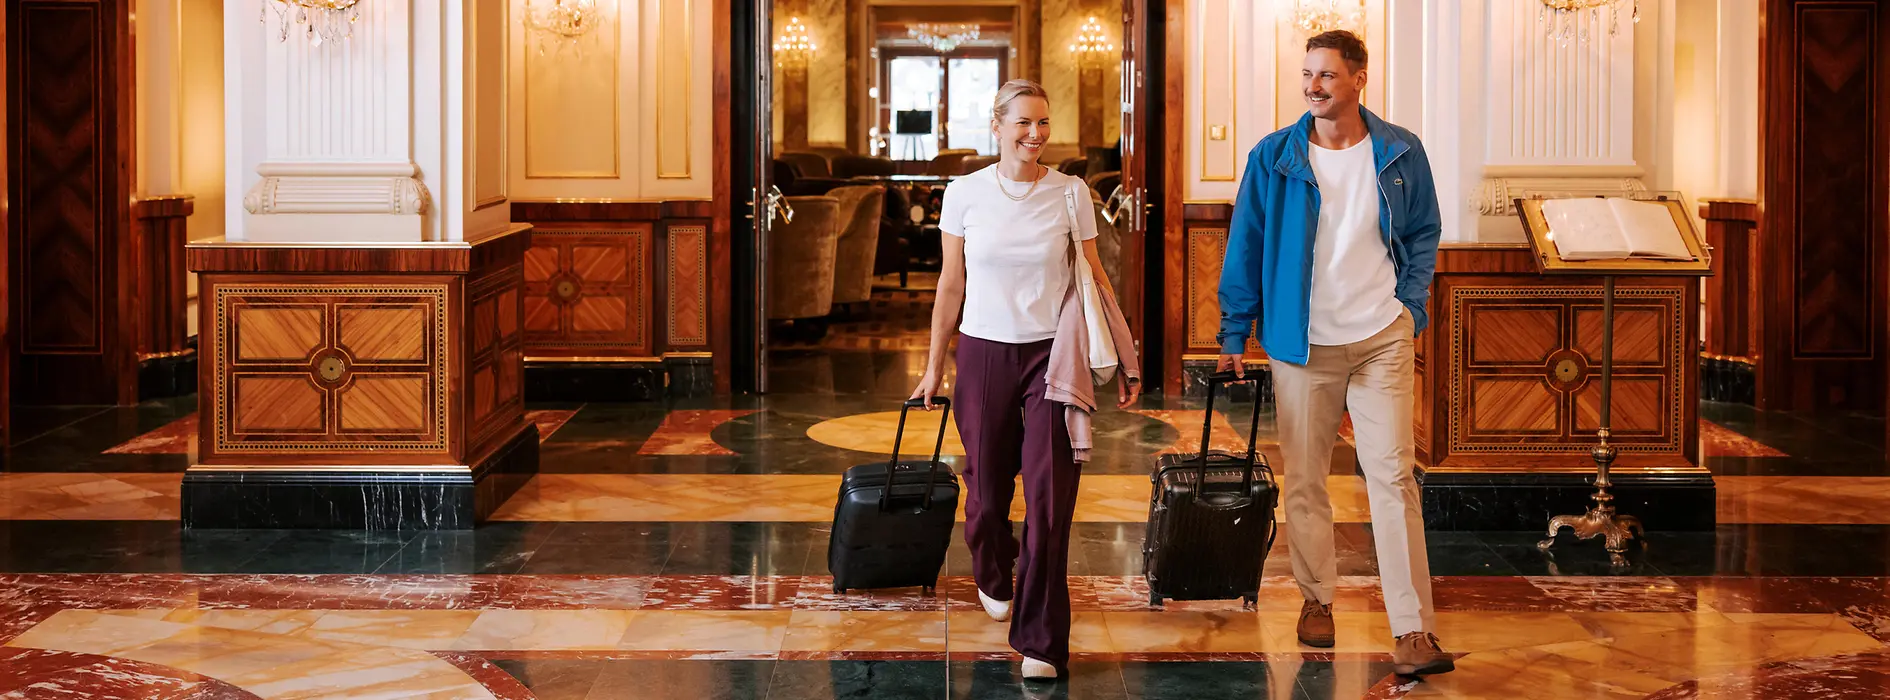 Dvě ženy se zavazadly ve vídeňském hotelu